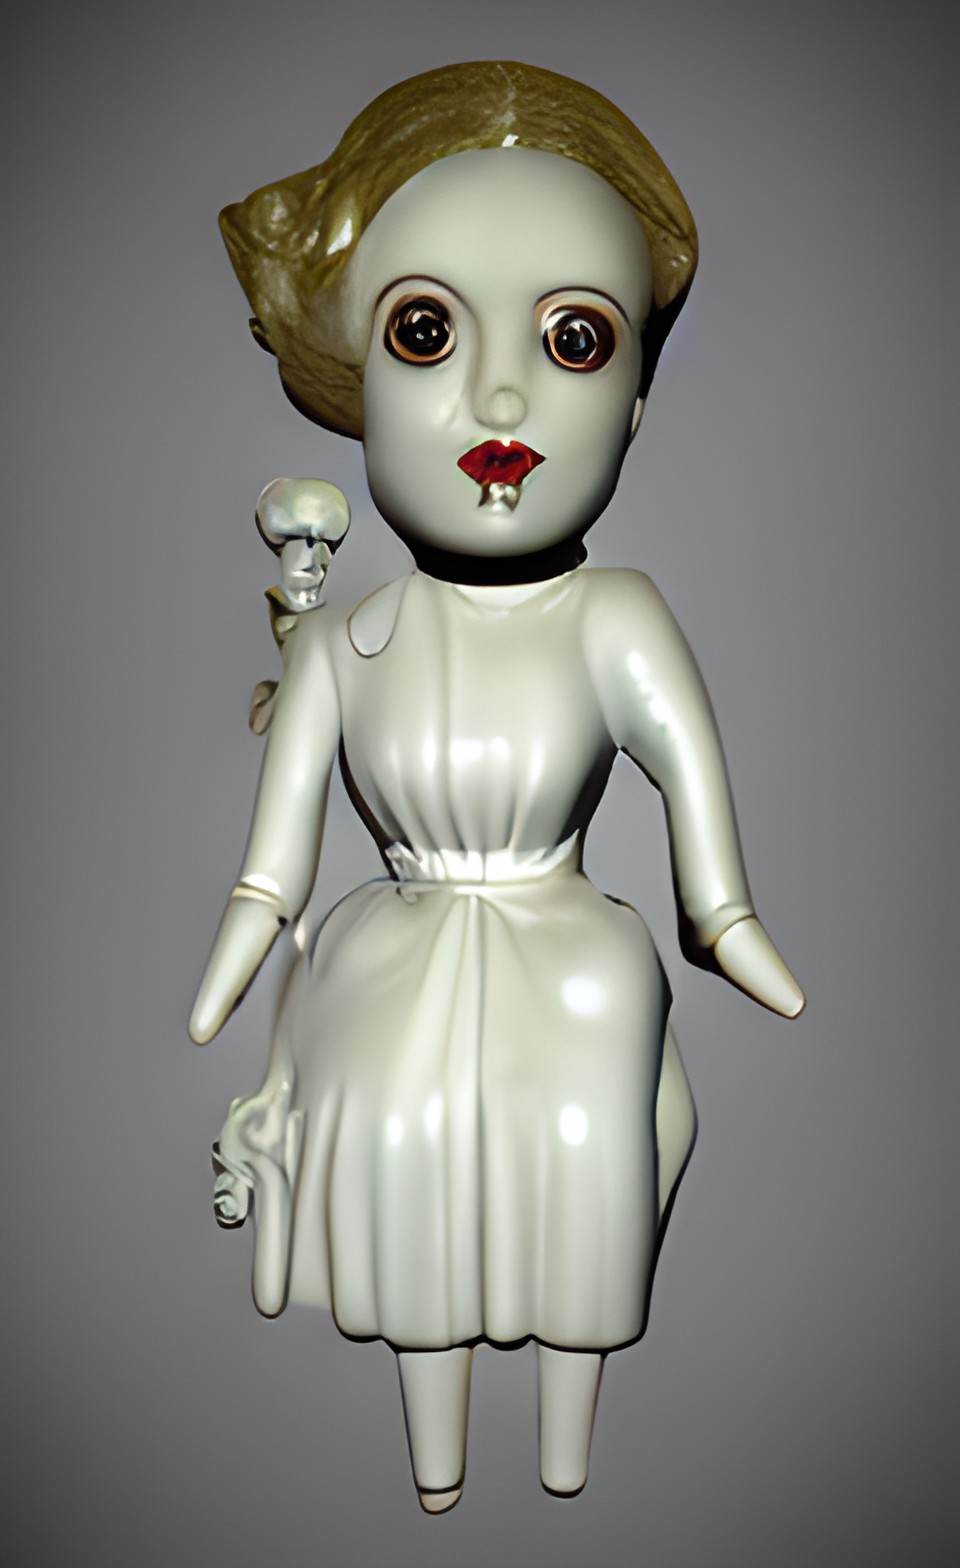 A dangerous porcelain doll